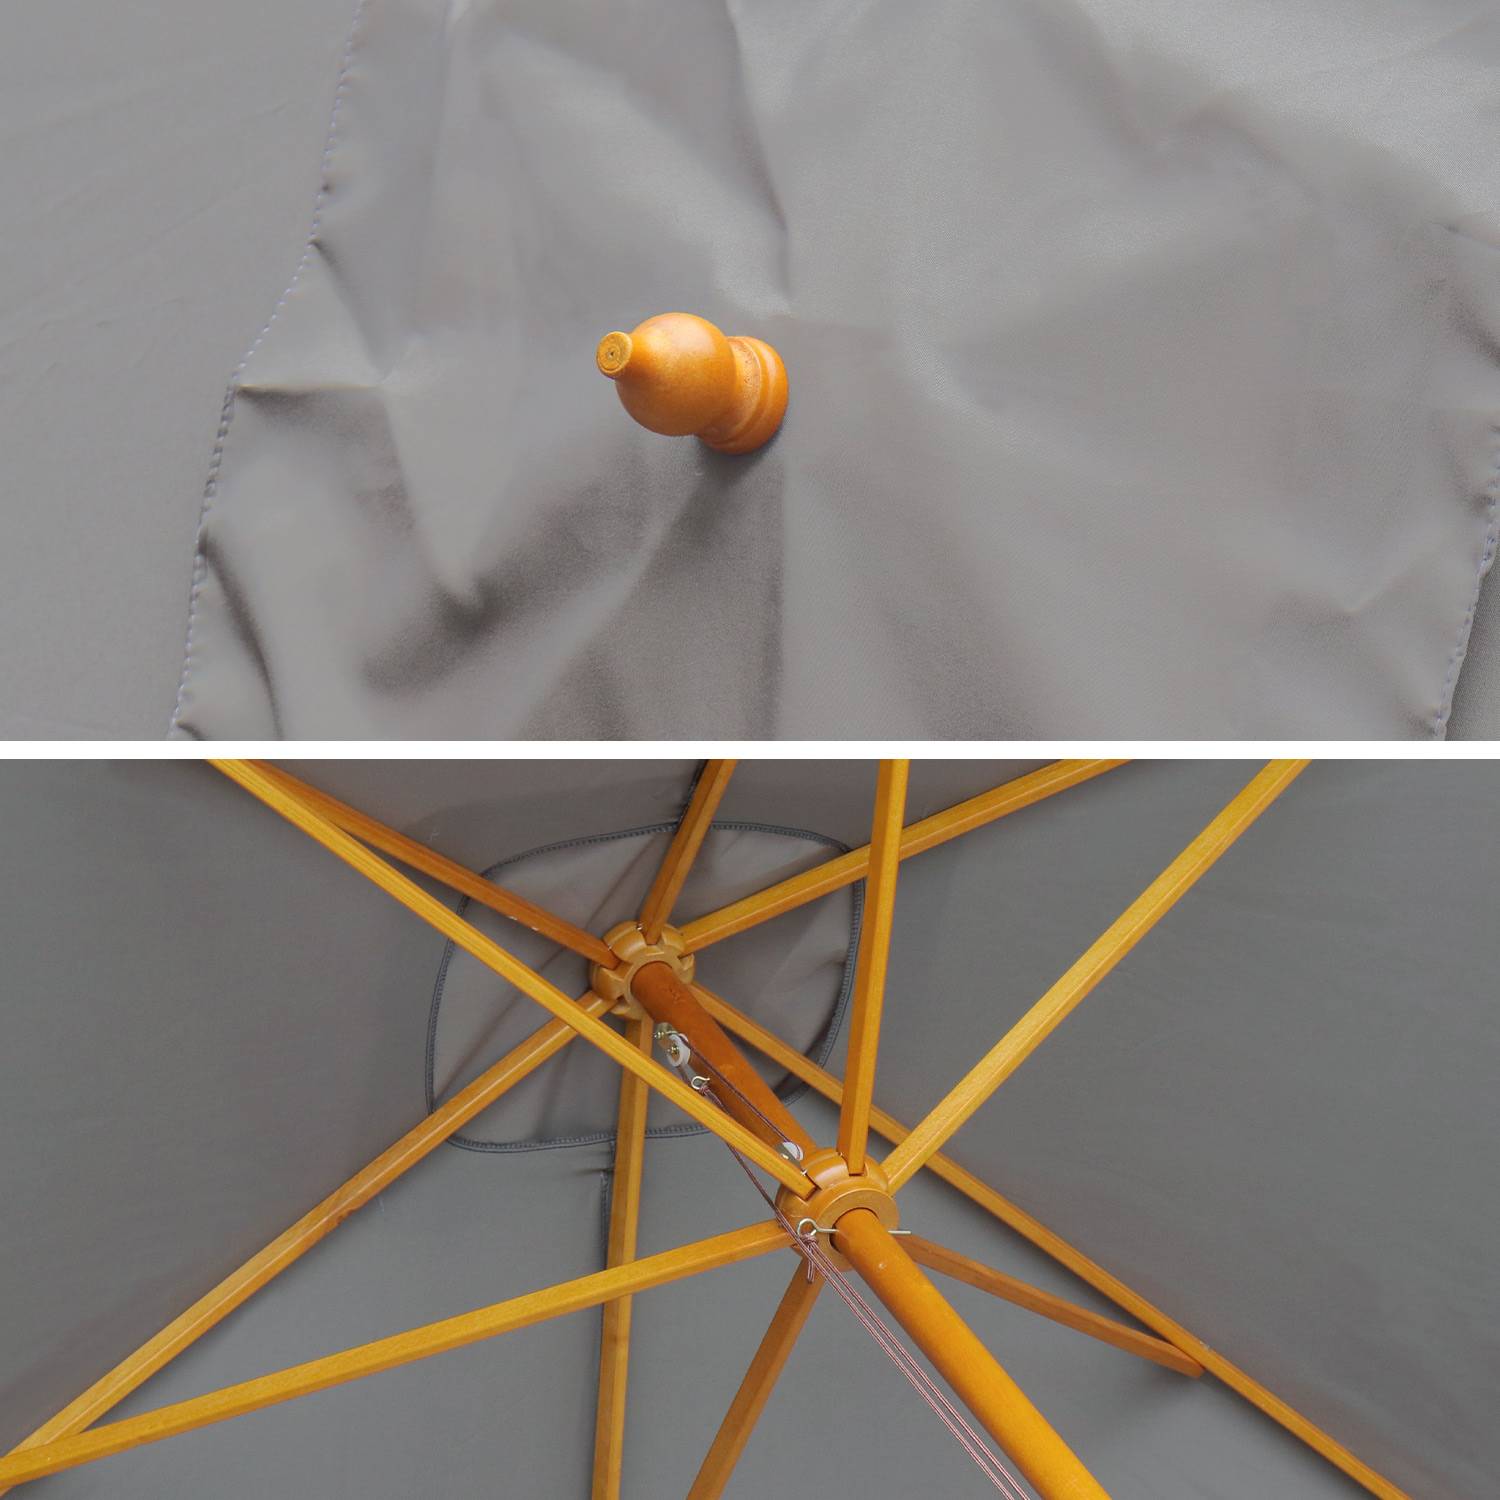 Ombrellone dritto, forma rettangolare, in legno, dimensioni: 2x3m - modello: Cabourg, colore: Grigio - palo centrale in legno, sistema di apertura manuale Photo5